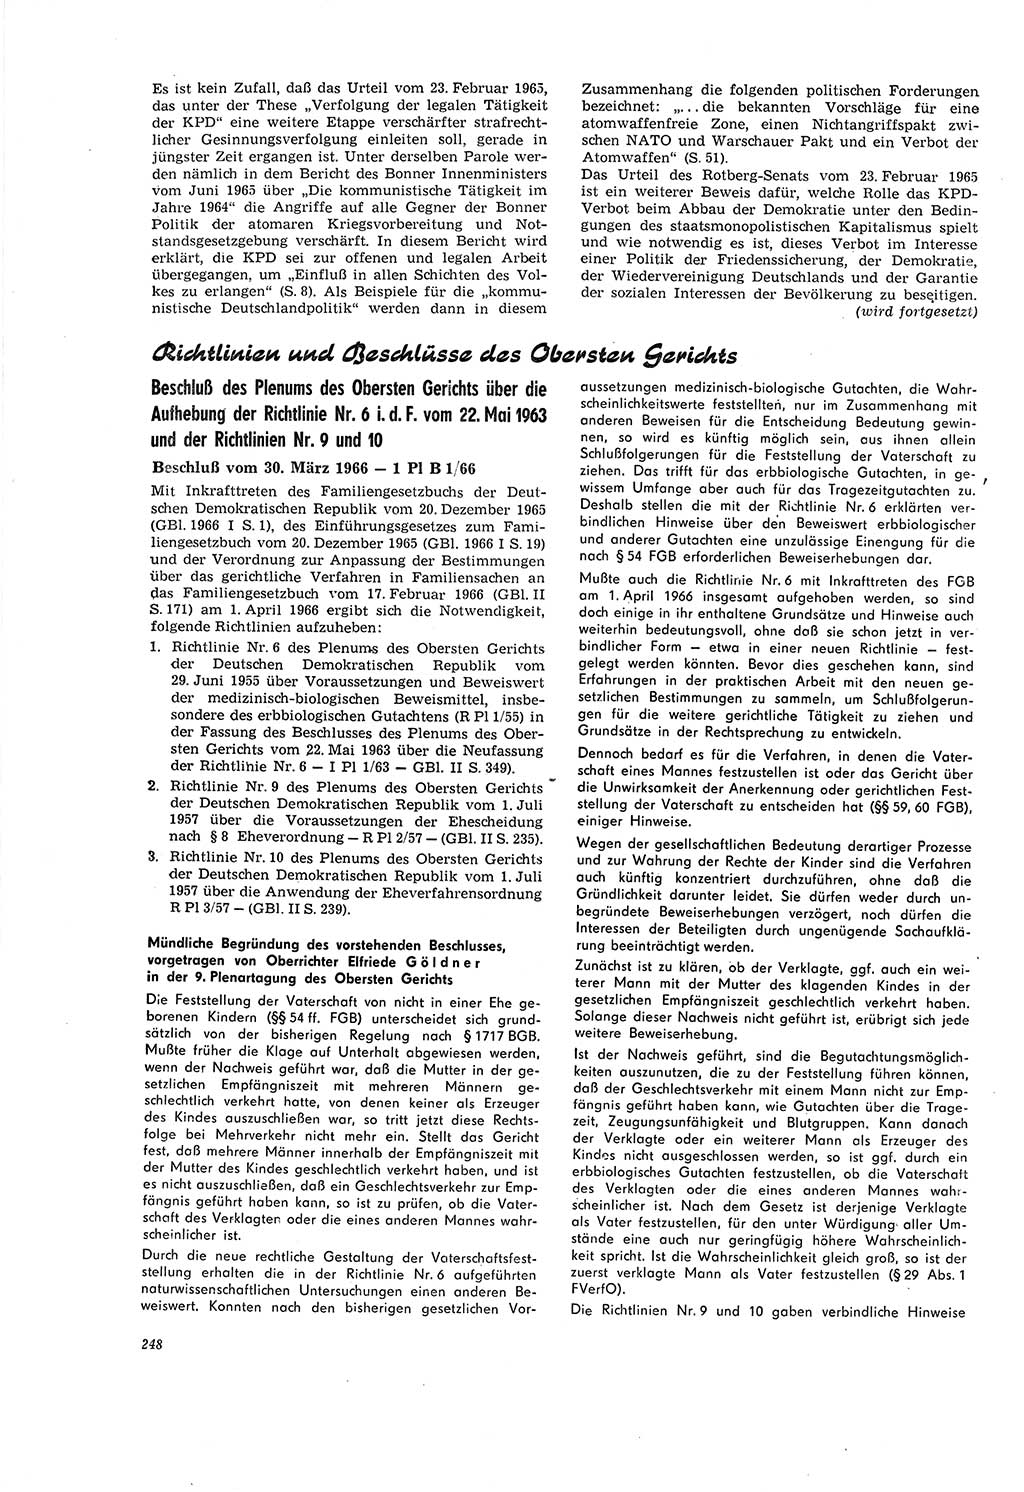 Neue Justiz (NJ), Zeitschrift für Recht und Rechtswissenschaft [Deutsche Demokratische Republik (DDR)], 20. Jahrgang 1966, Seite 248 (NJ DDR 1966, S. 248)